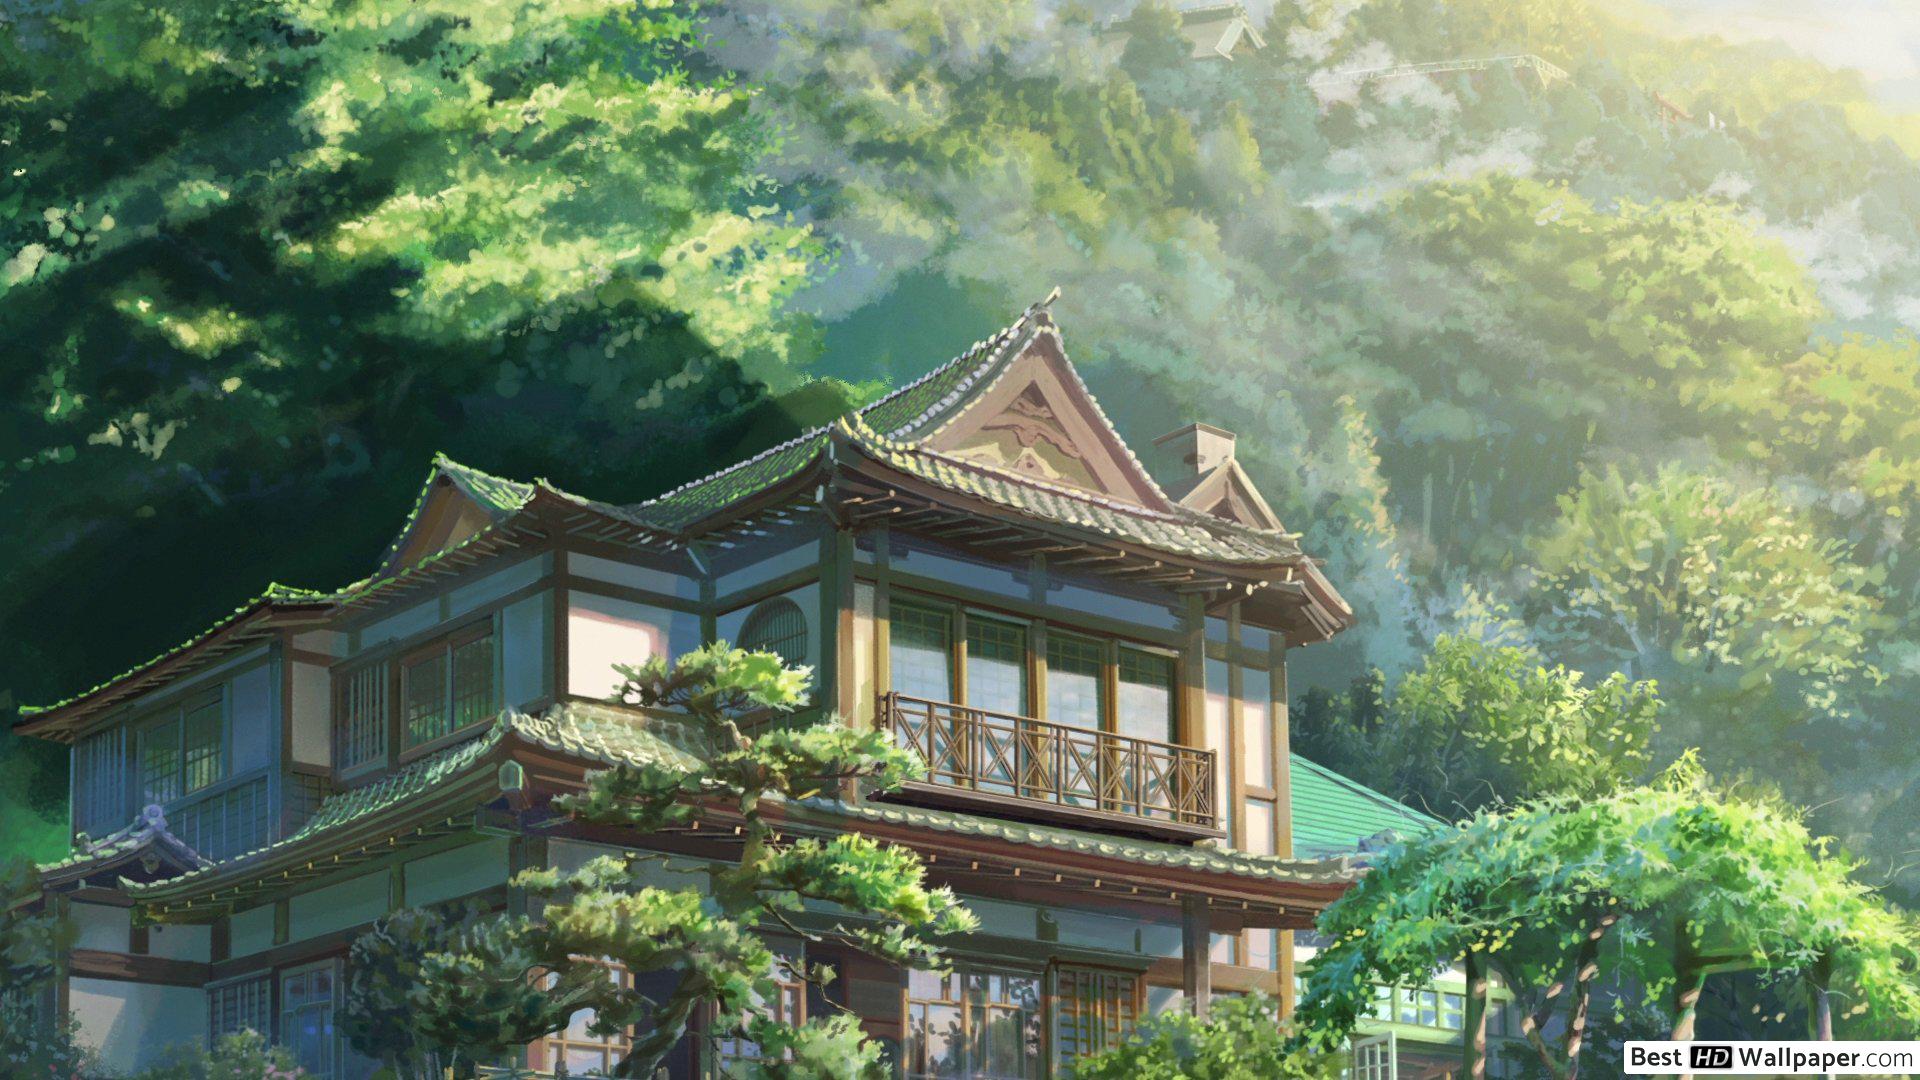 kimi no na wa wallpaper,architettura cinese,natura,architettura,architettura giapponese,proprietà